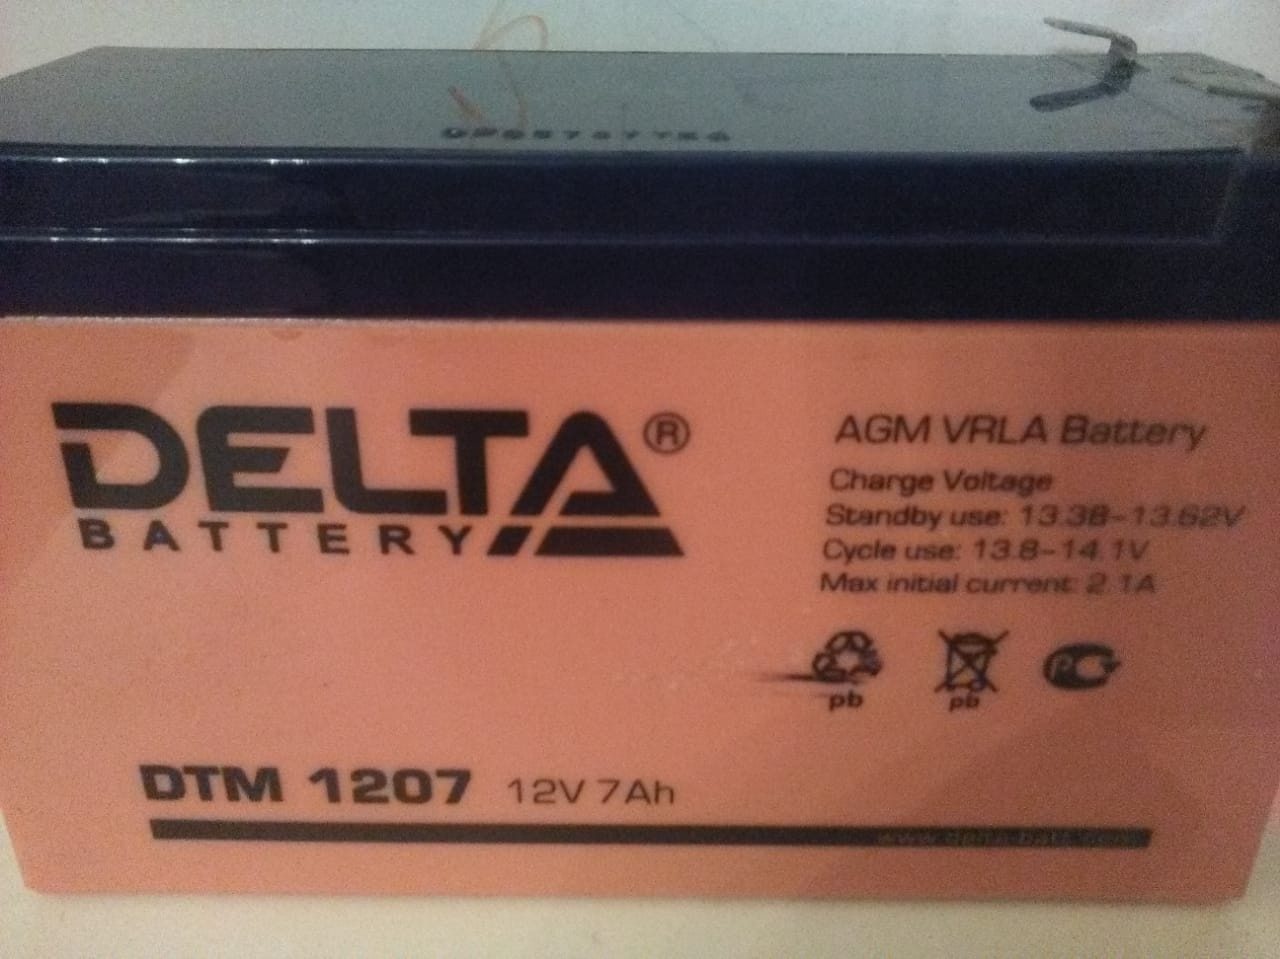 Dt 12v 7ah. Аккумуляторная батарея Delta DT 12100 (12v / 100ah). Дельта аккумулятор 12v 7ah. Батарея Delta DT 1207 (12v, 7ah) <DT 1207>. Delta DTM 1207 12v.